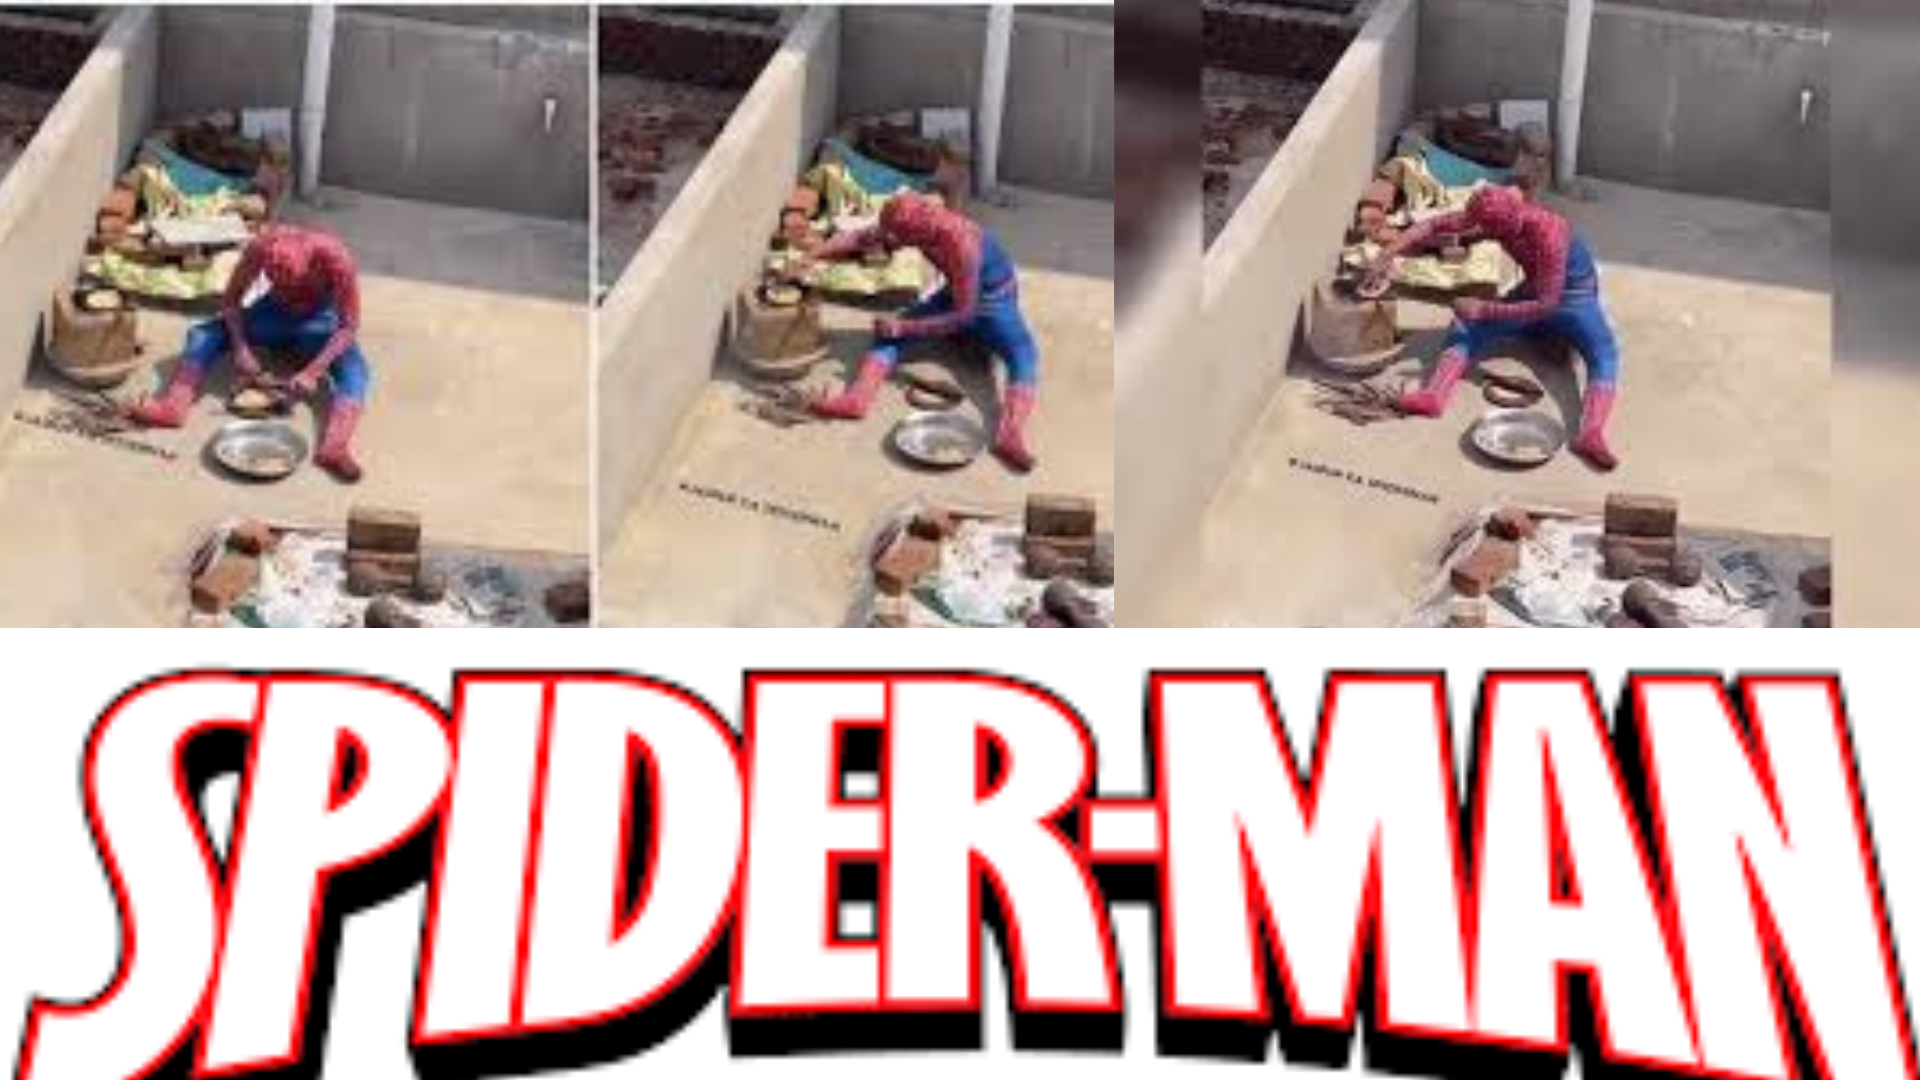 Jaipur’s Spider Man Making Rotis On Terrace: Watch Viral Video